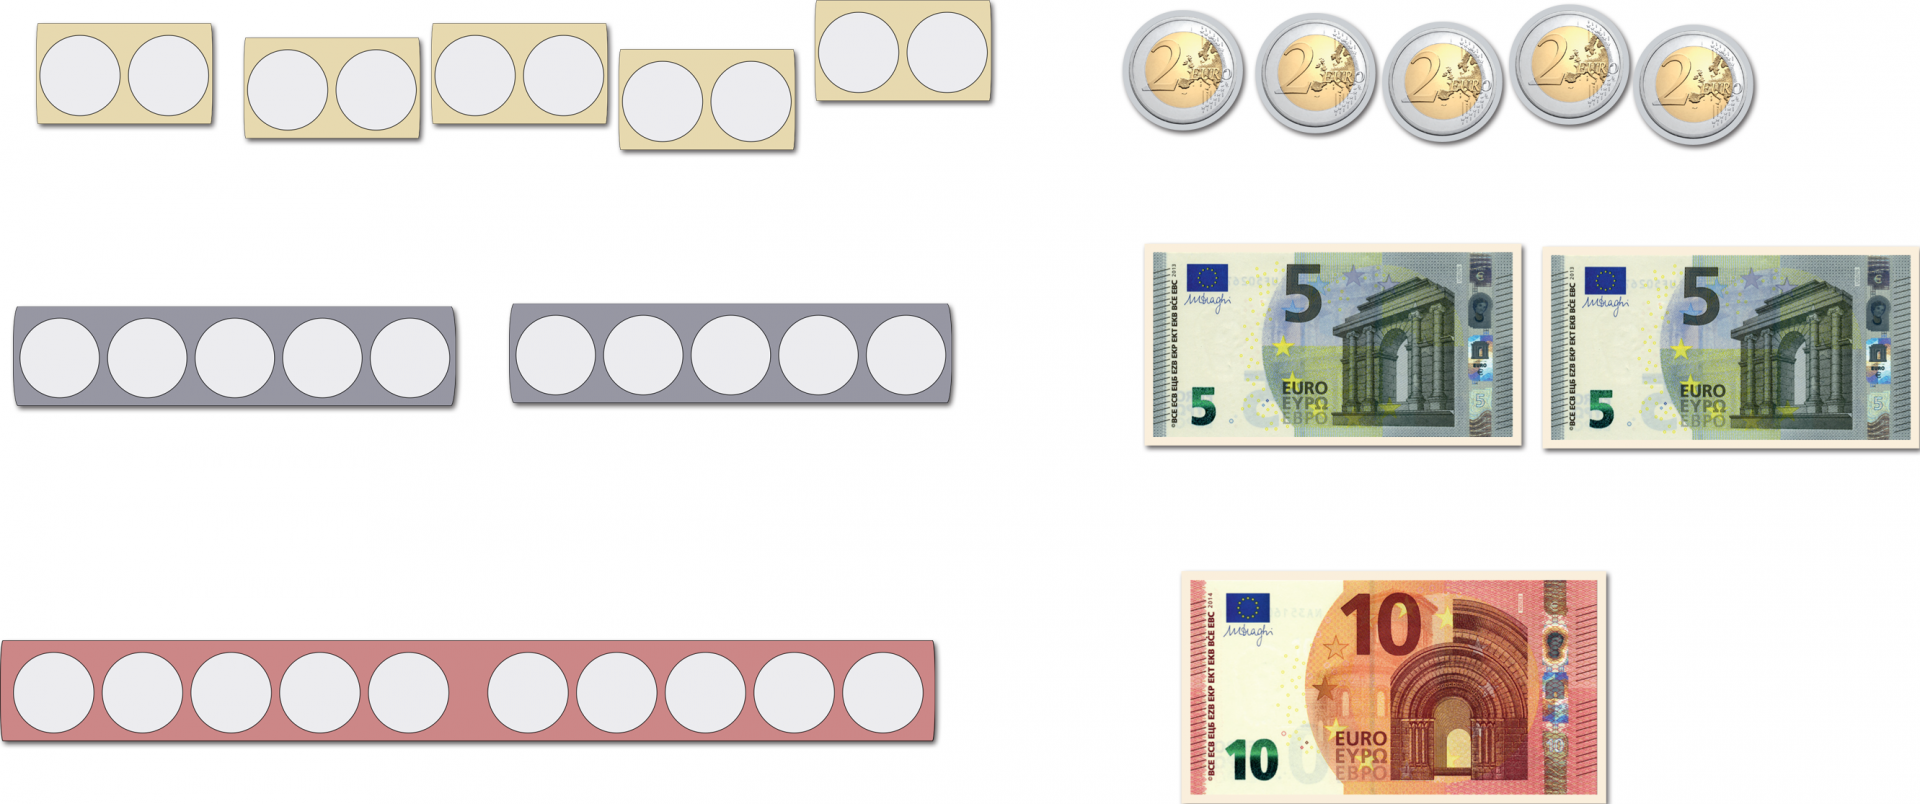 Darstellung von Euroscheinen und -münzen in Punktestreifen. Oben: 5 gelb hinterlegte Zweierpunktestreifen, daneben 5 Zweieuromünzen. Mittig: 2 blau hinterlegte Fünferpunktestreifen, daneben 2 Fünfeuroscheine. Unten: Ein rot hinterlegter Zehnerpunktestreifen, daneben ein Zehneuroschein.